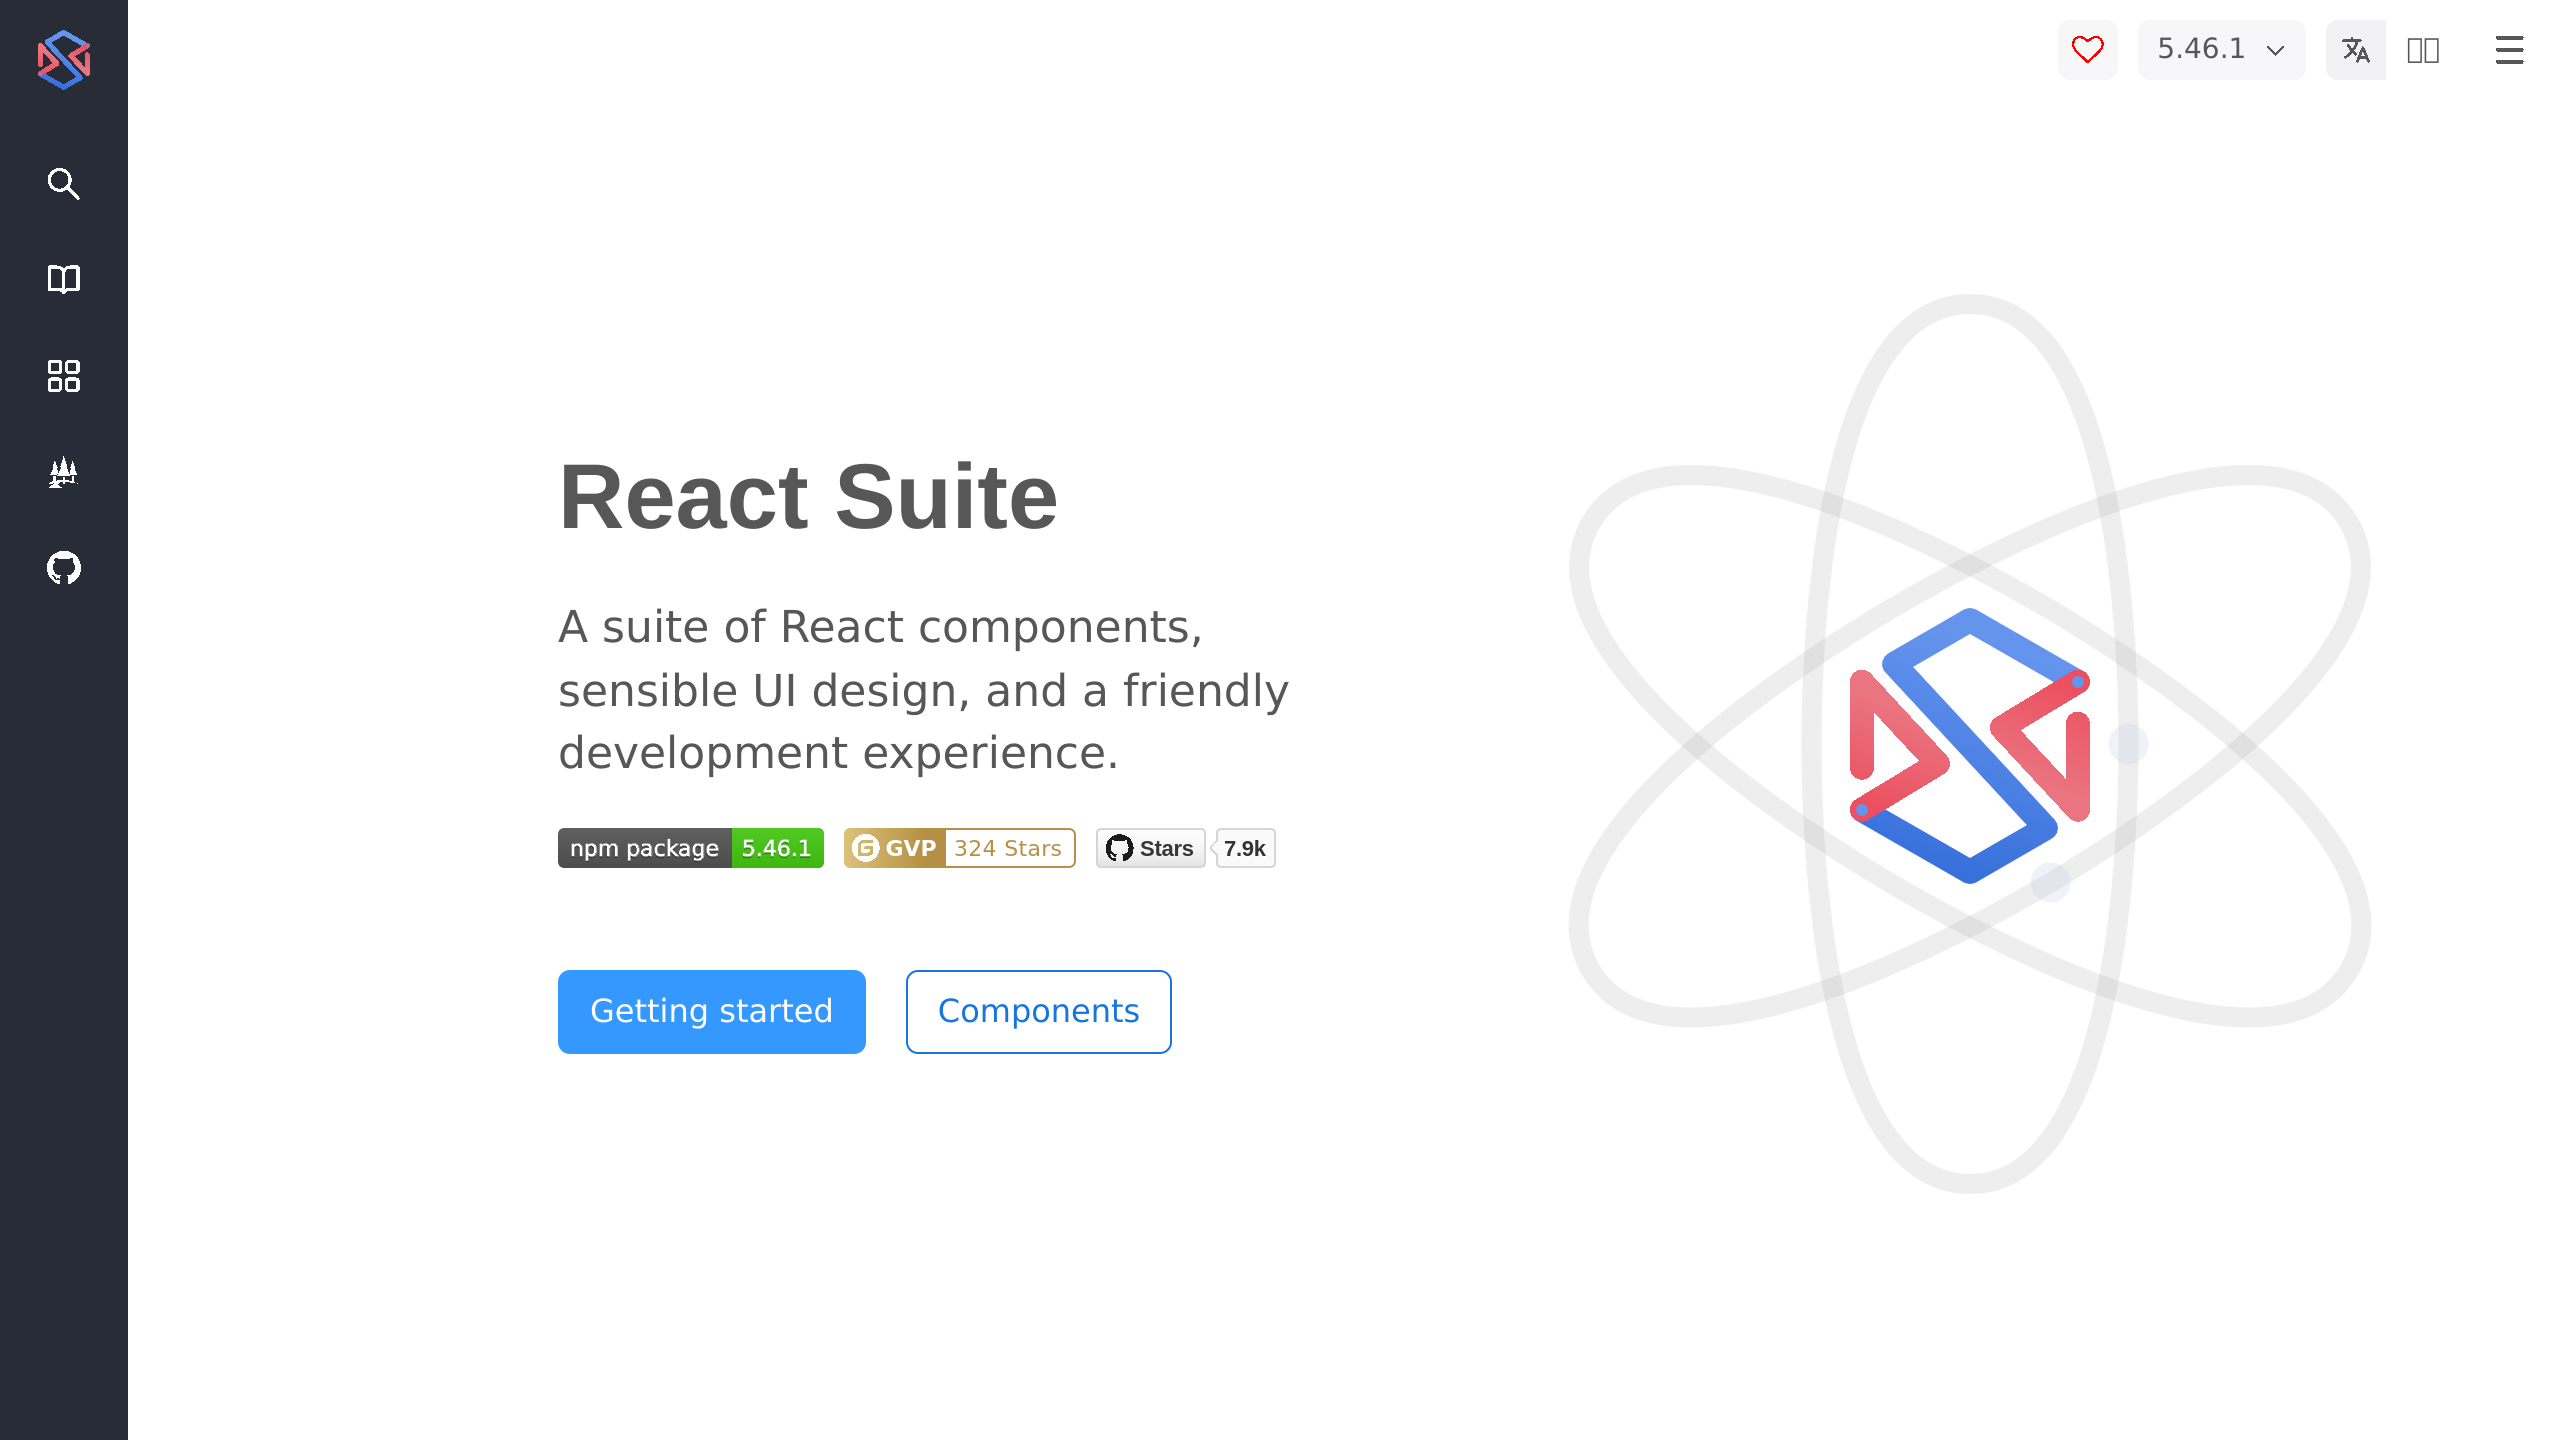 React Suite's website screenshot